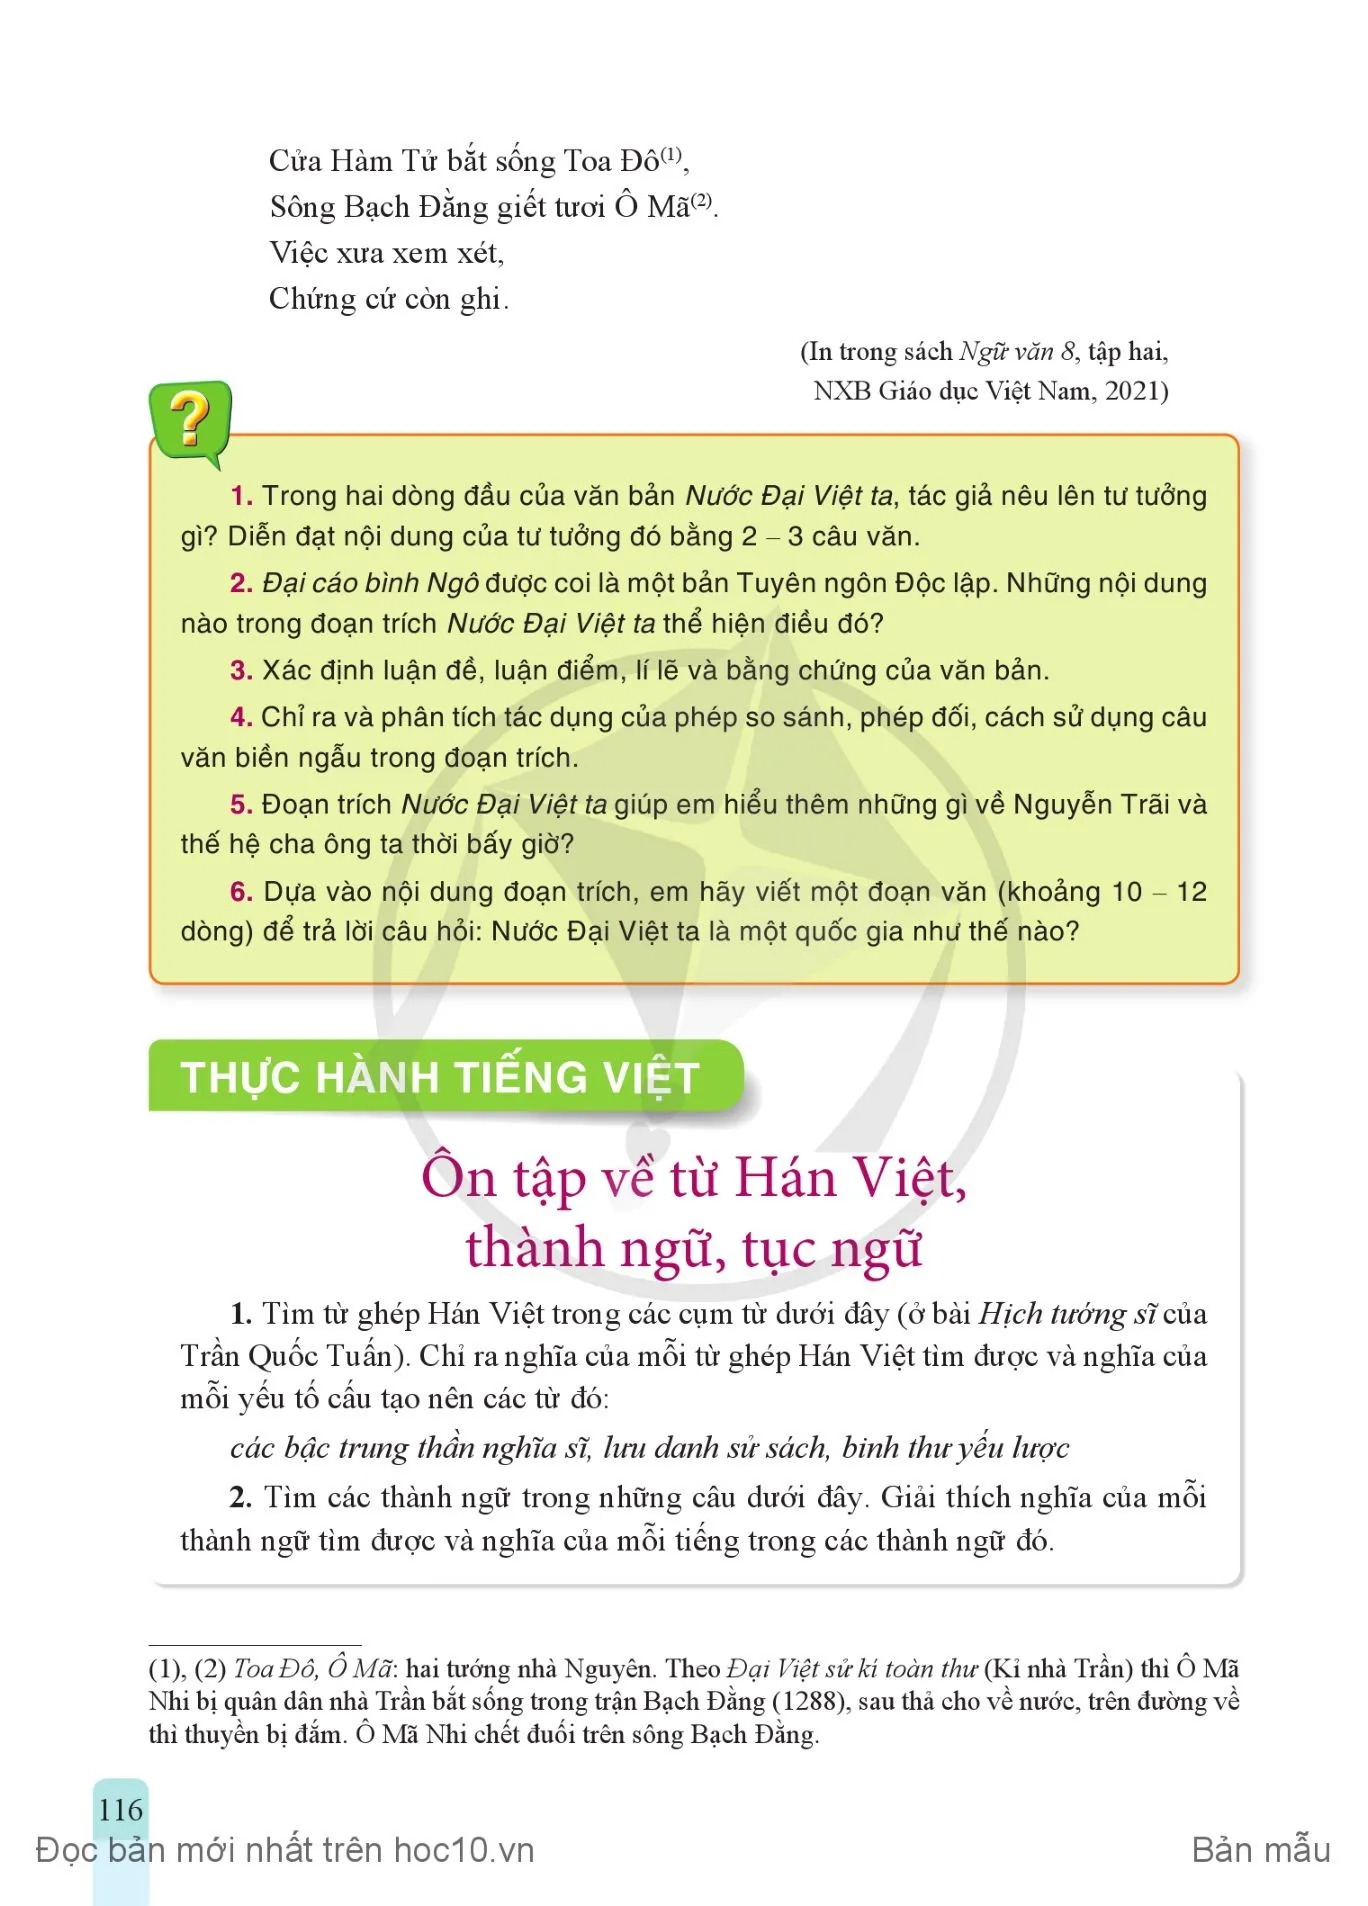 • Thực hành tiếng Việt: Ôn tập về từ Hán Việt, thành ngữ, tục ngữ